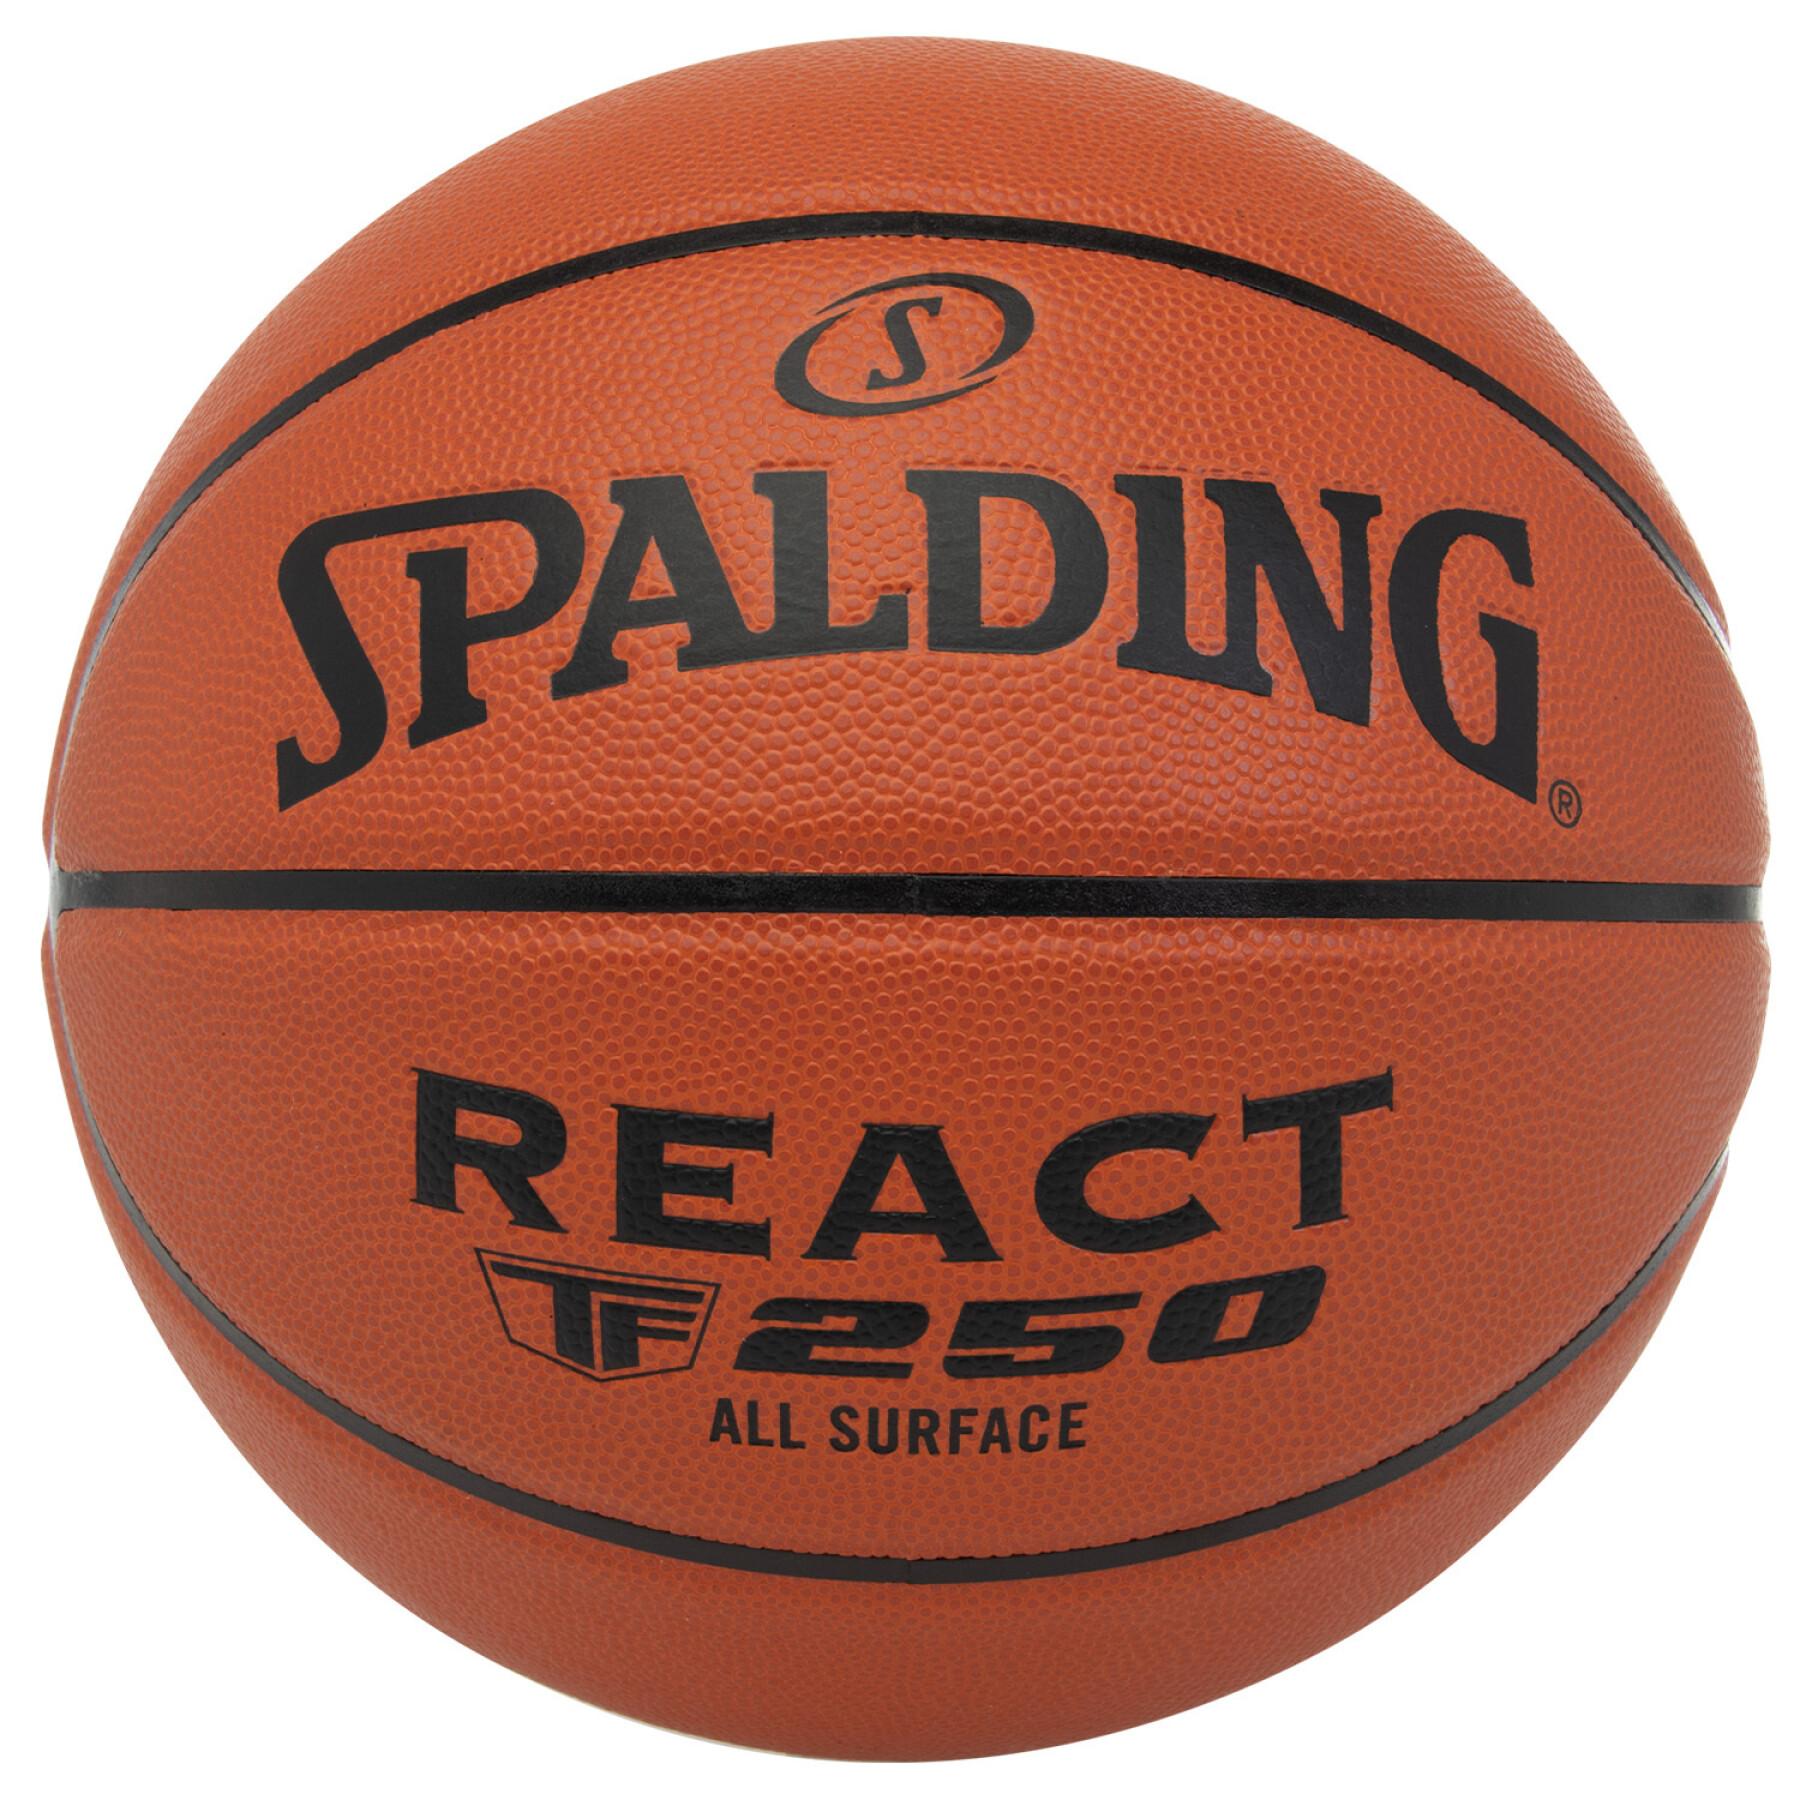 Basketball Spalding React TF-250 Composite